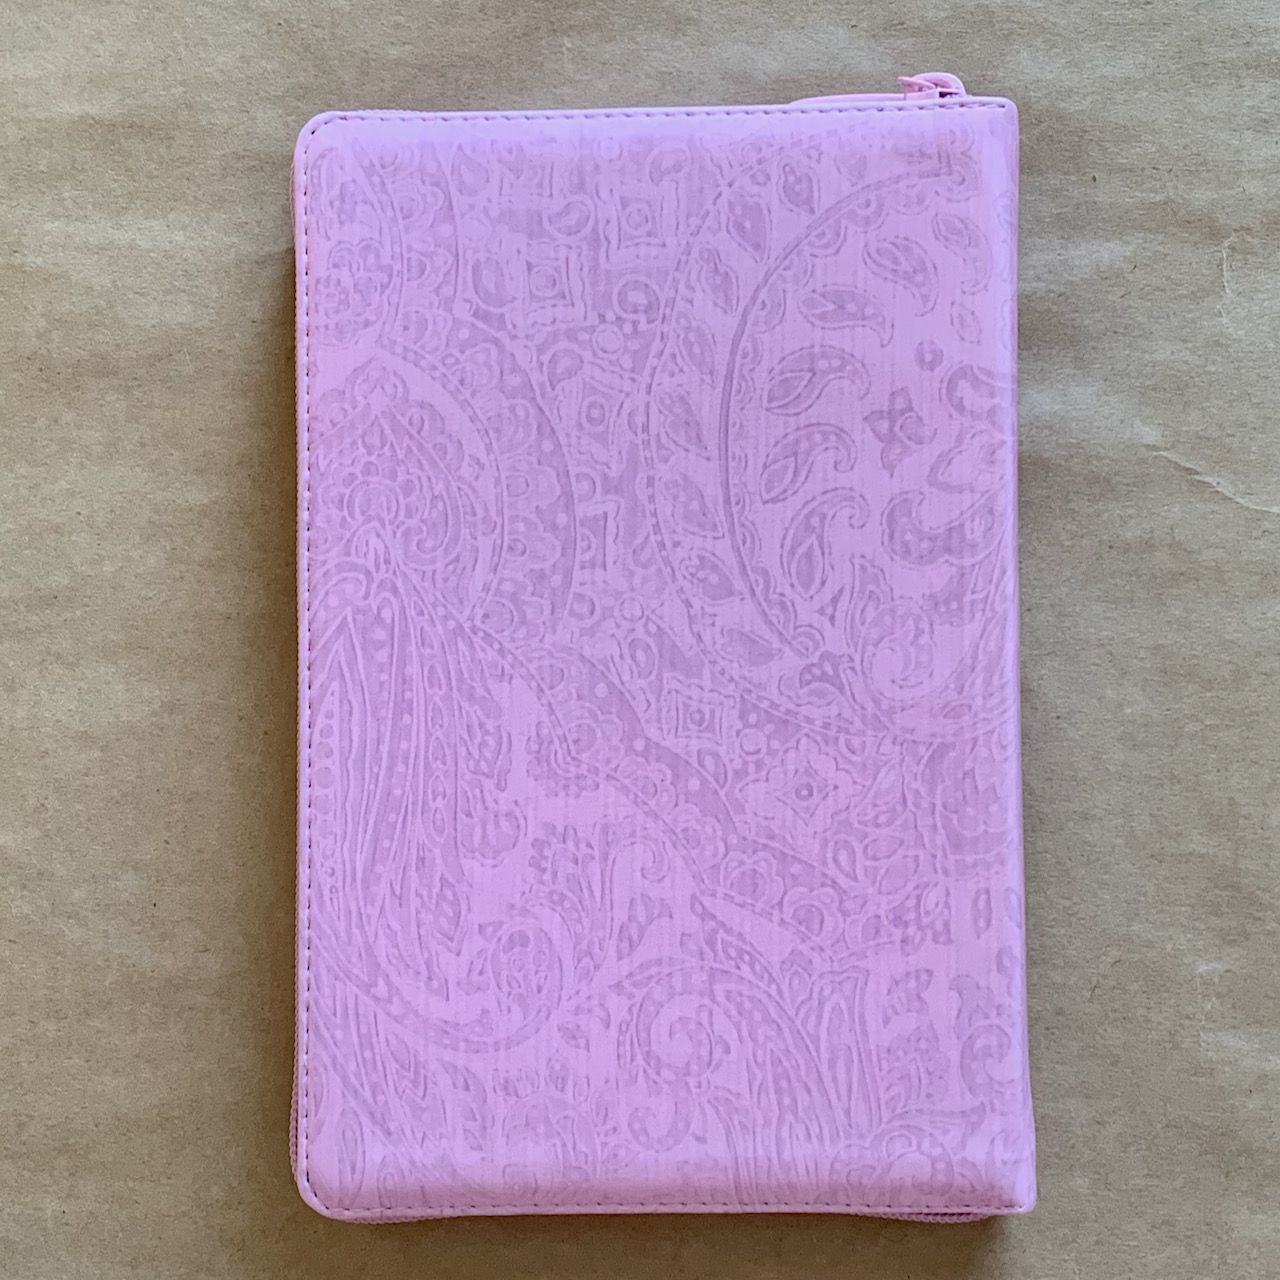 Библия 055z код D4 7074 переплет из искусственной кожи на молнии, цвет розовый с цветной печатью под ткань, дизайн "сердце", средний формат, 143*220 мм, параллельные места по центру страницы, золотой обрез, крупный шрифт